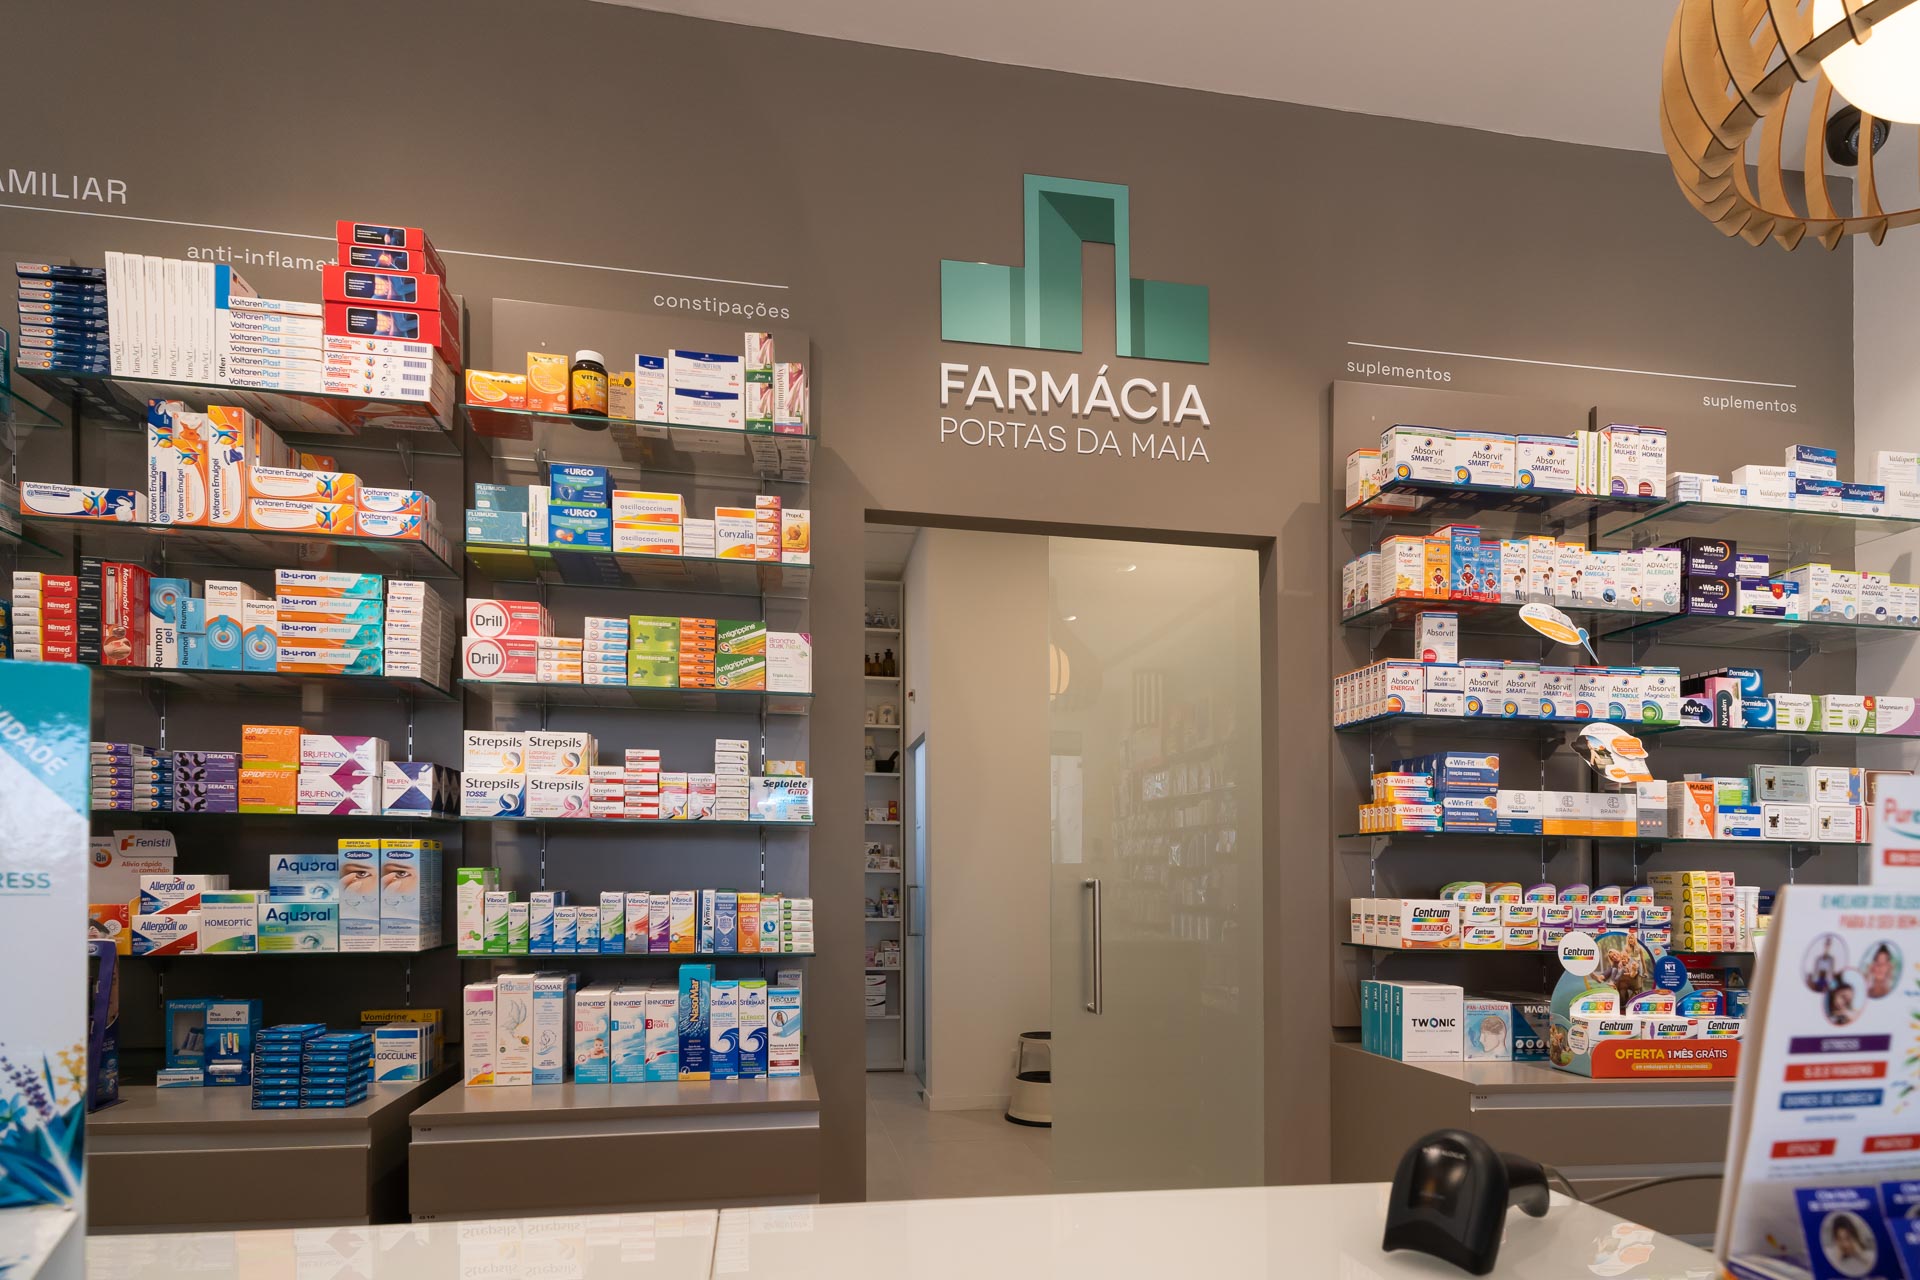 Renovação de farmacias. Visual merchandise para farmacias. como expor os produtos em farmacia. Expor produtos dermocosmetica e saúde.